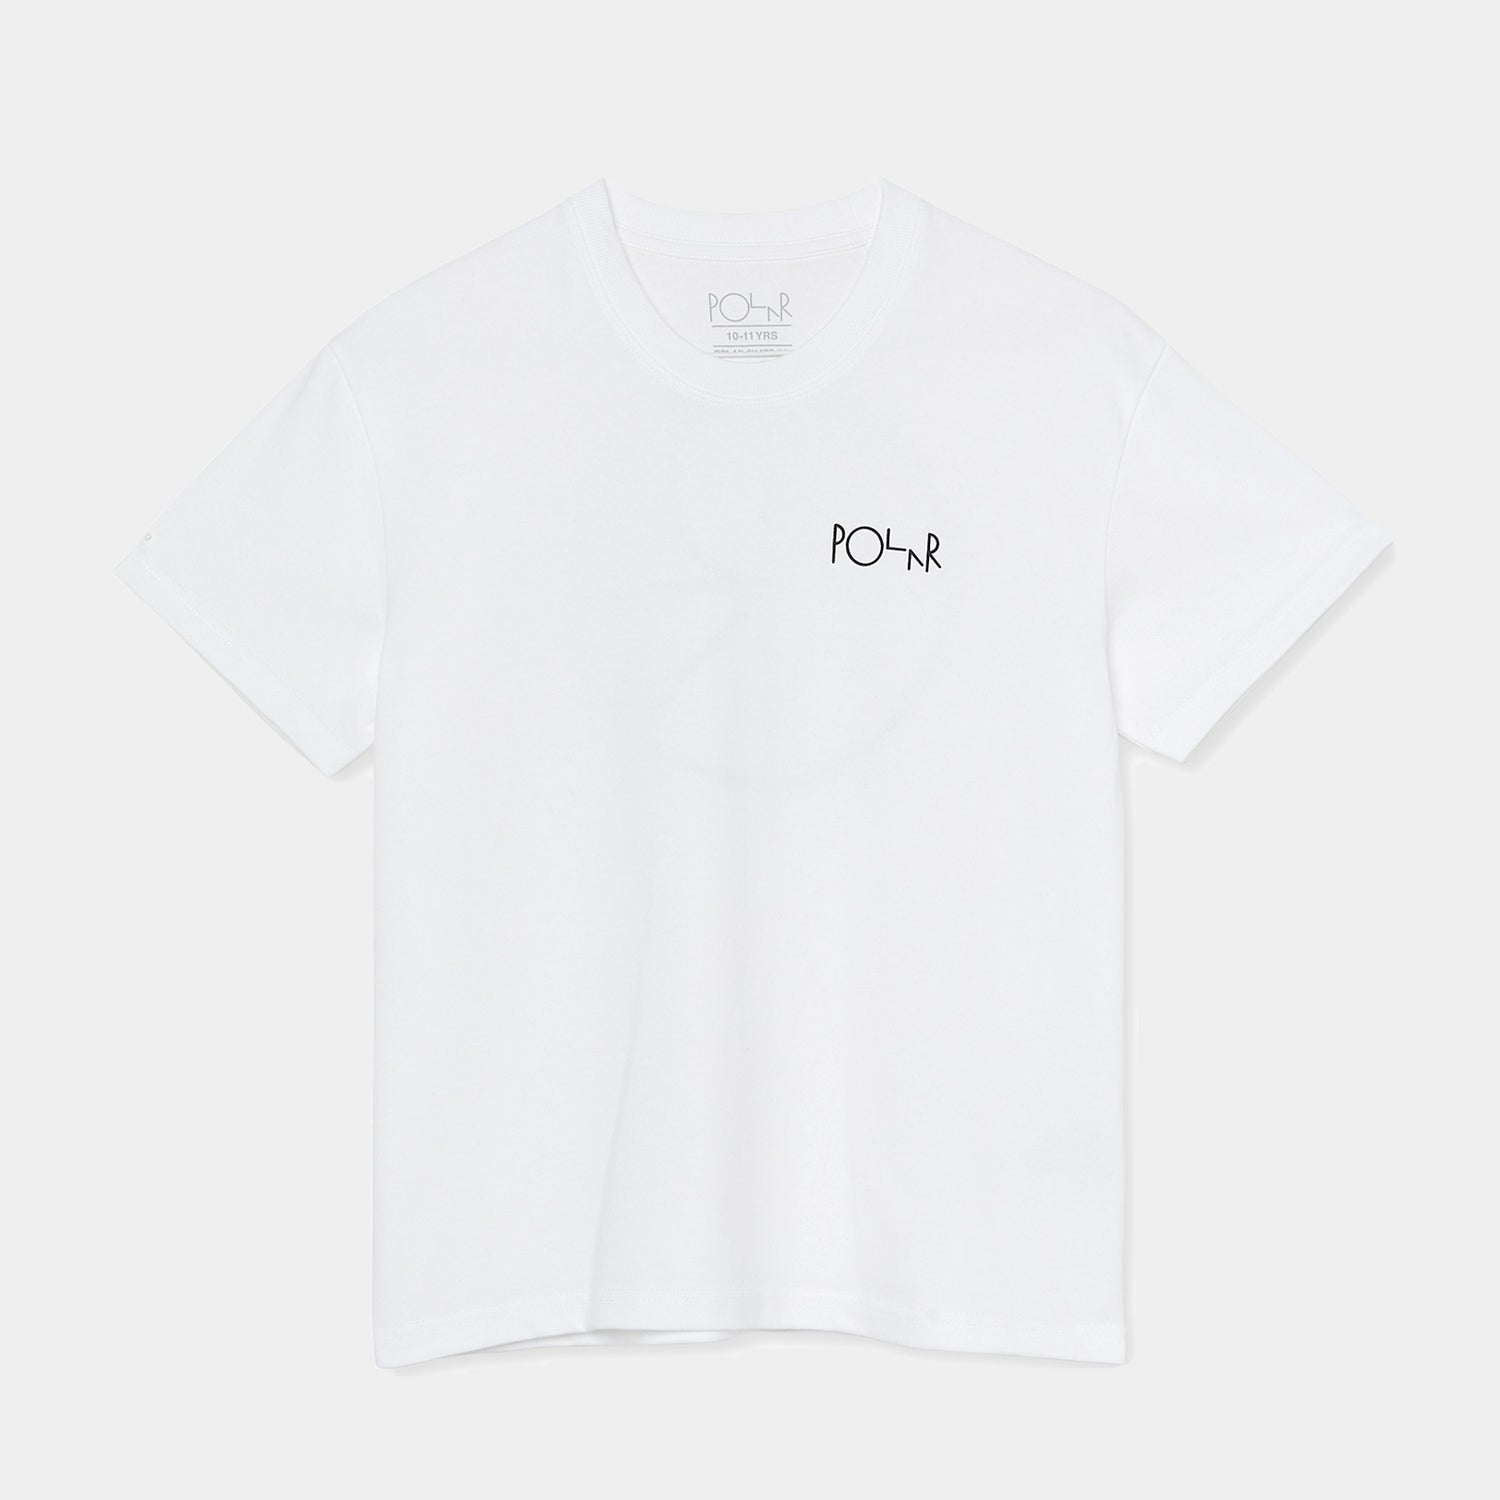 Tee-shirt pour enfant de la marque Polar, couleur blanc, Stroke logo, vue de face